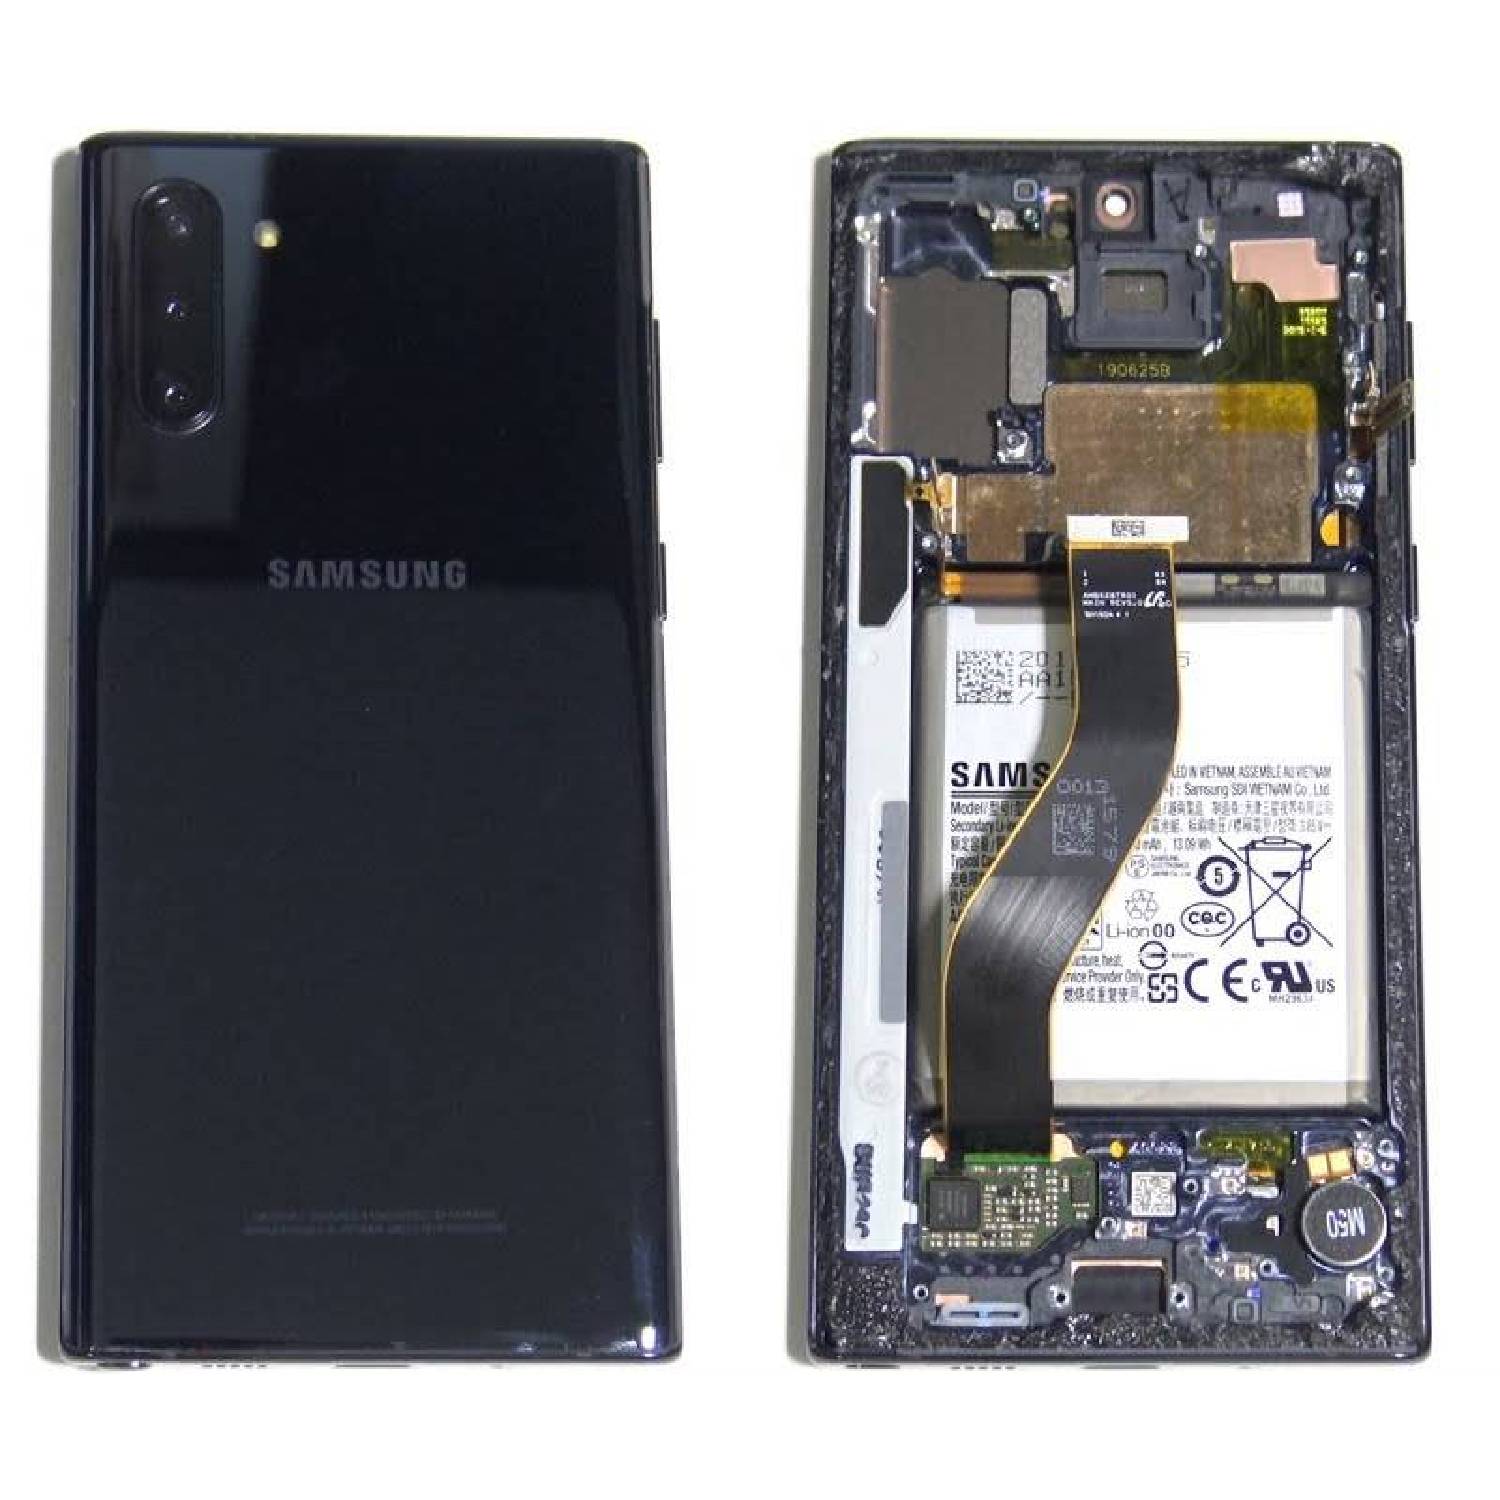 Samsung Galaxy Note 10 lite repair